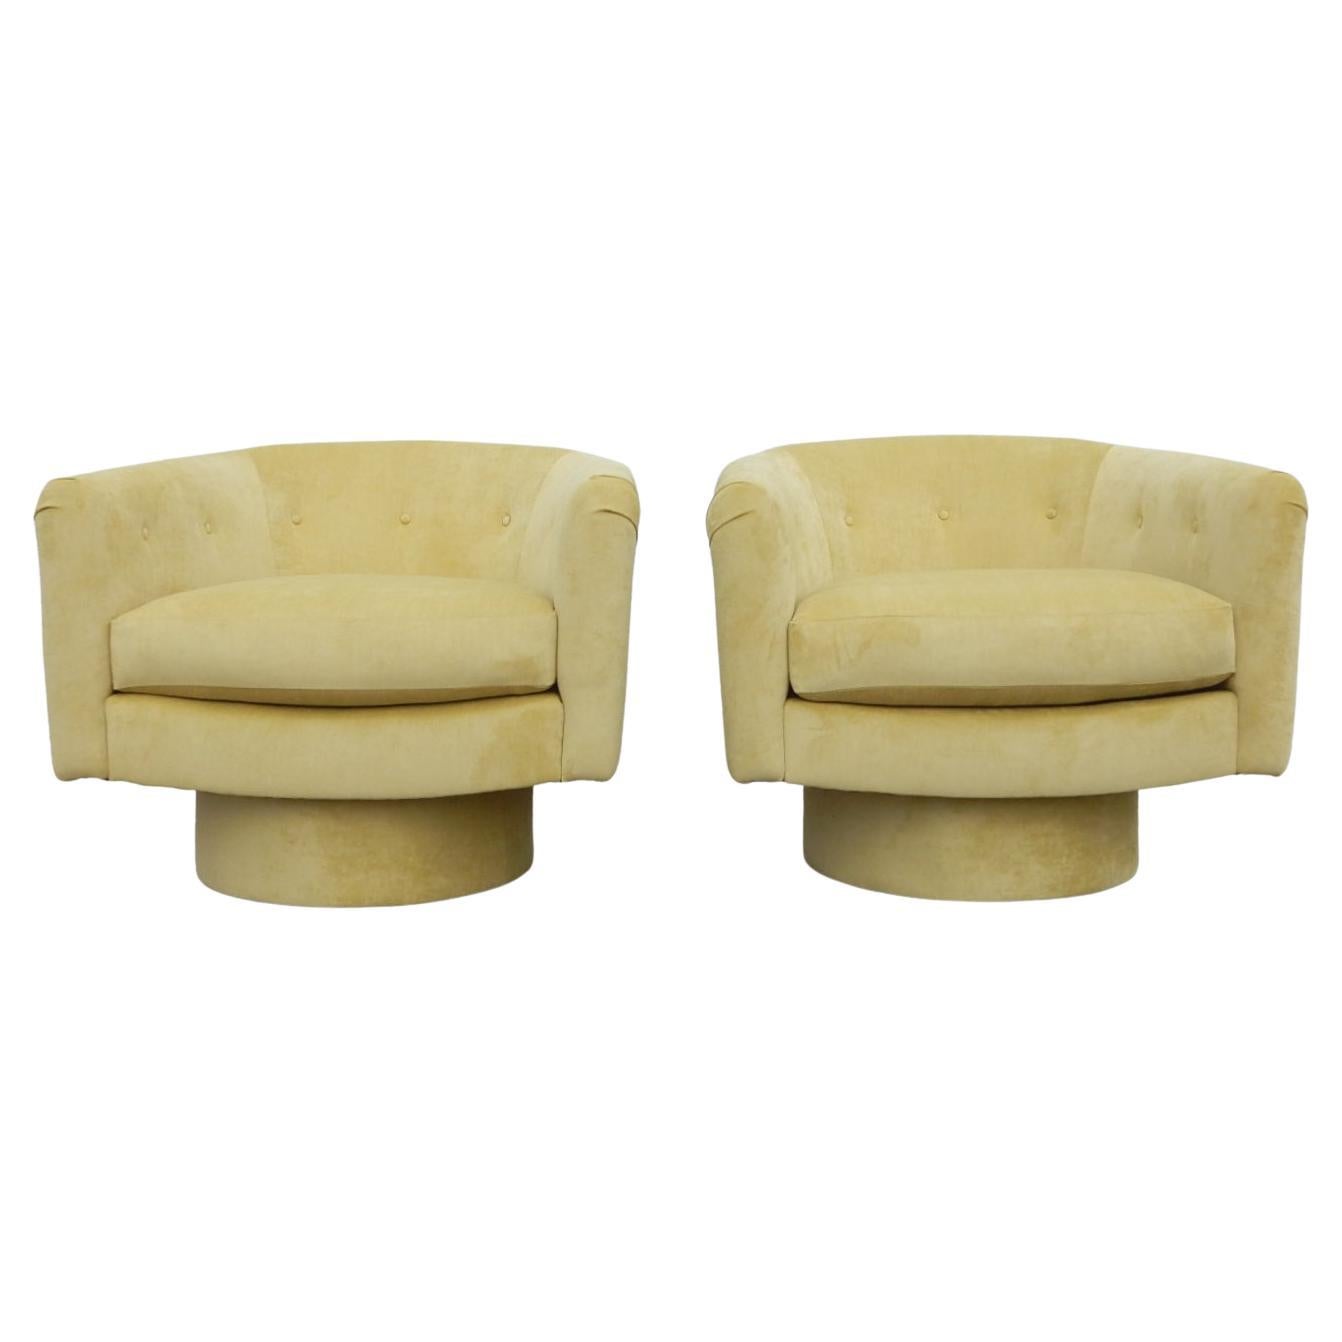 Une paire de petits fauteuils de salon pivotants conçus dans le style de Milo Baughman.
On vient de les faire retapisser par un professionnel dans un velours jaune canari.
Comme un état neuf, prêt à être utilisé à la livraison.
 